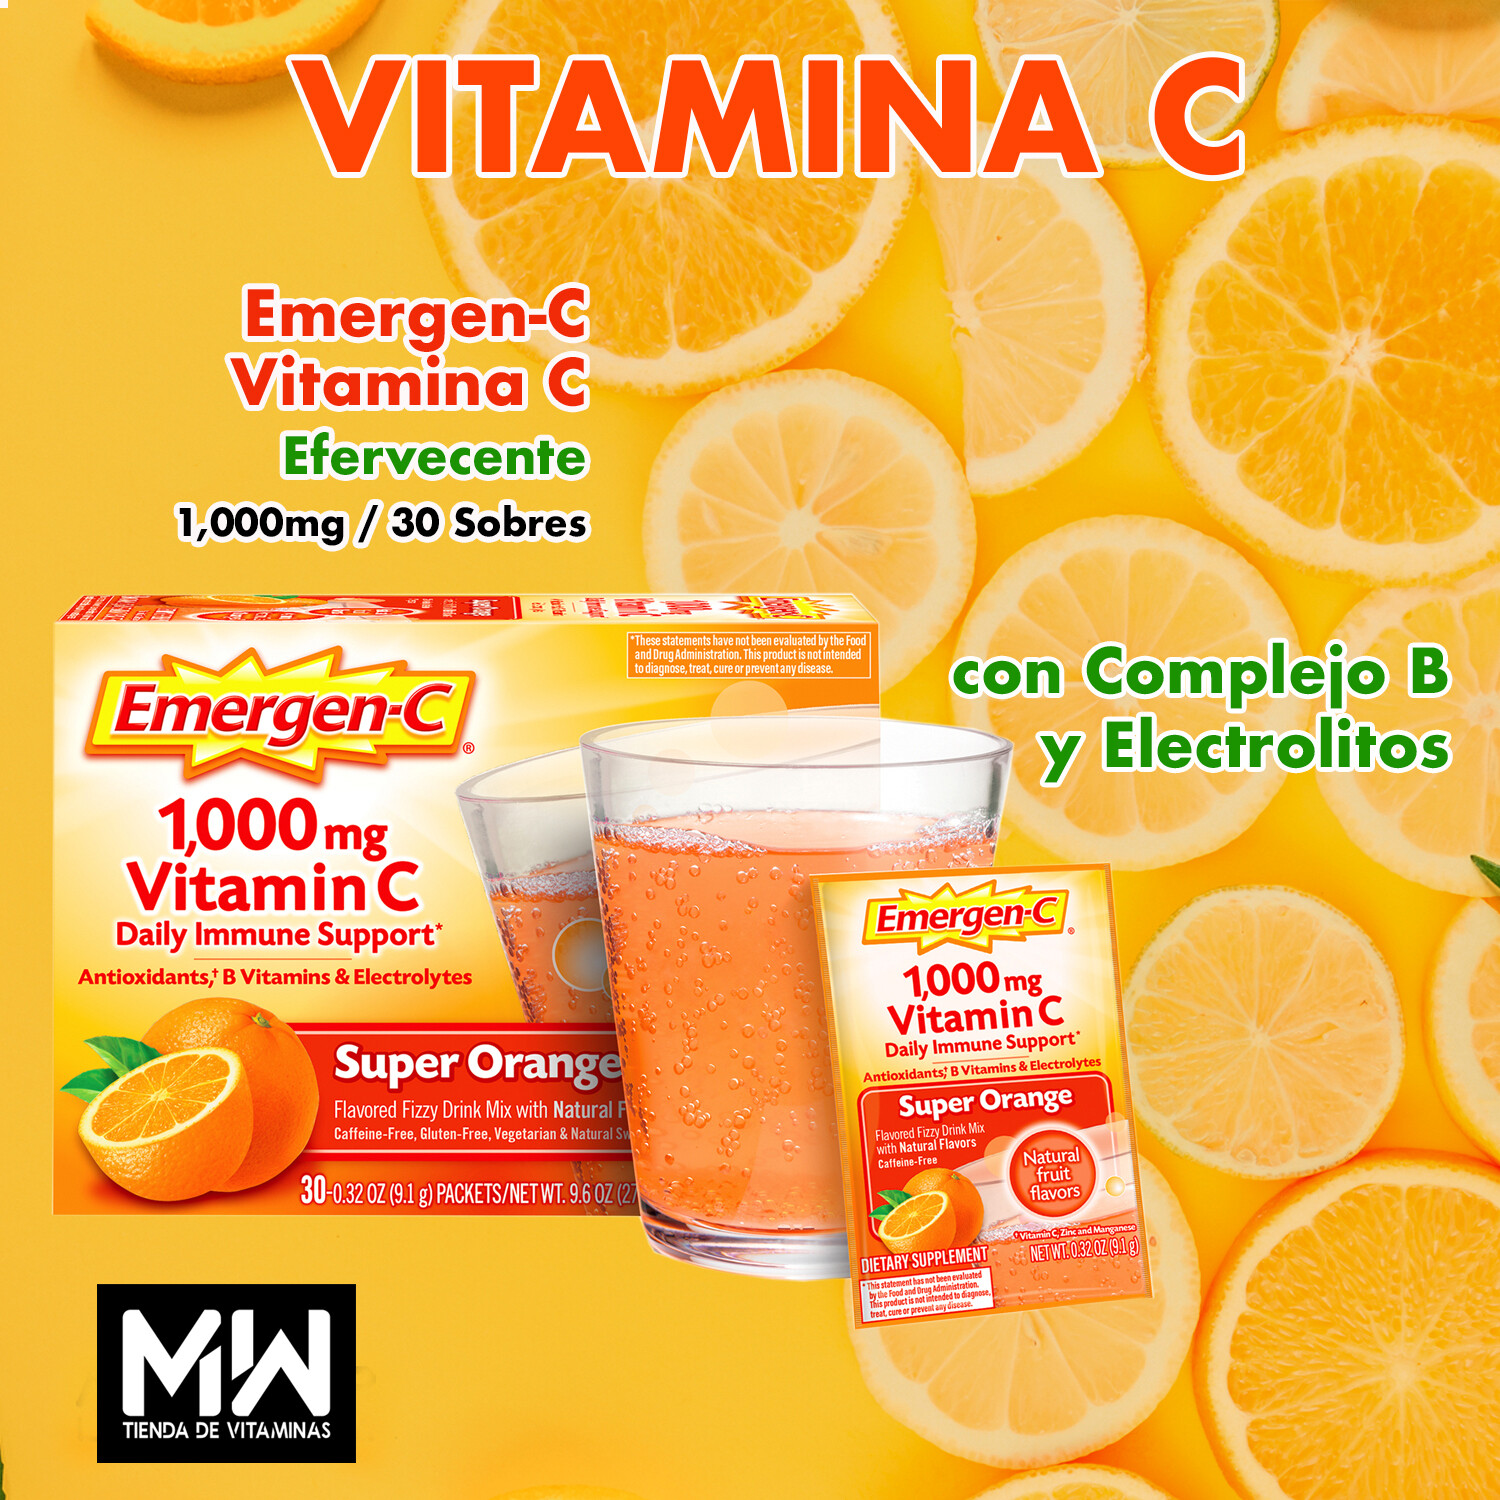 Emergen-C Efervescente + Electrolitos y Vitaminas B / Emergen-C 1,000mg, 30 sobres